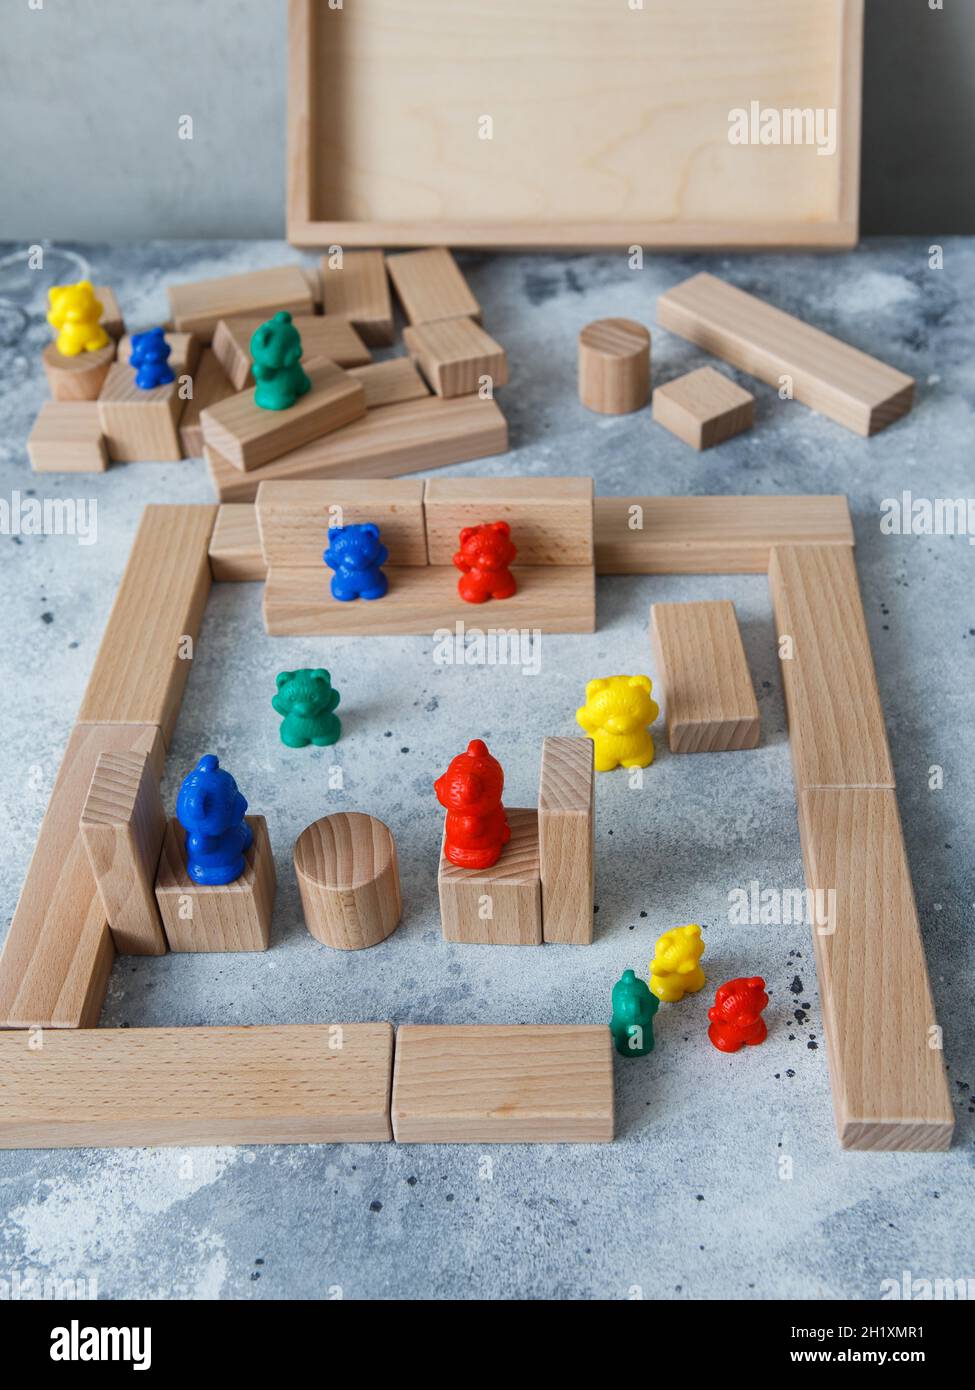 Construction de jouets en bois avec des blocs de bois écologiques fabriqués à partir de bois durables.Éléments en bois pour le développement mental et l'éducation des enfants Banque D'Images